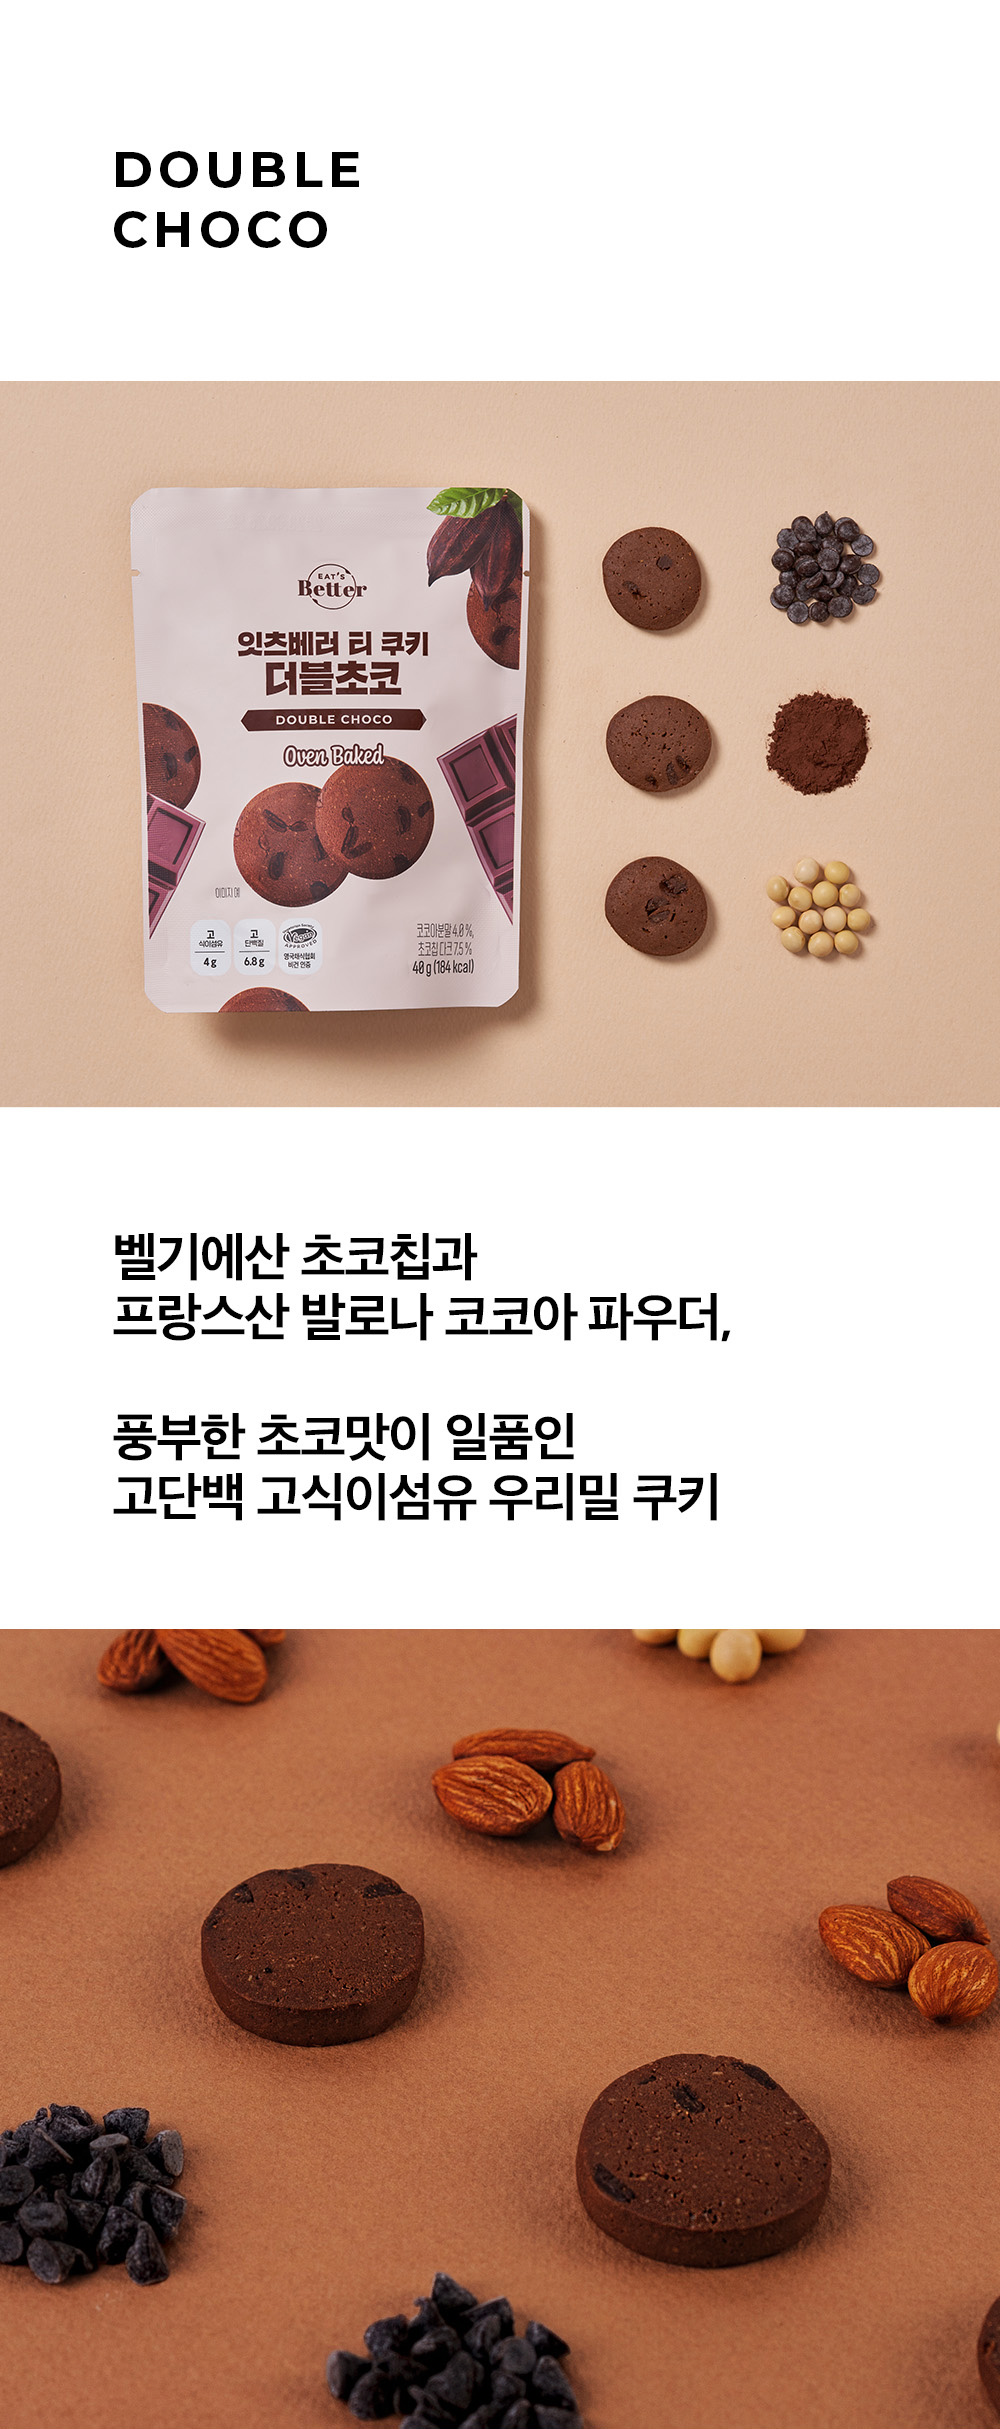 [DOUBLE CHOCO]
벨기에산 초코칩과
프랑스산 발로나 코코아 파우더, 풍부한 초코맛이 일품인 고단백 고식이섬유 우리밀 쿠키